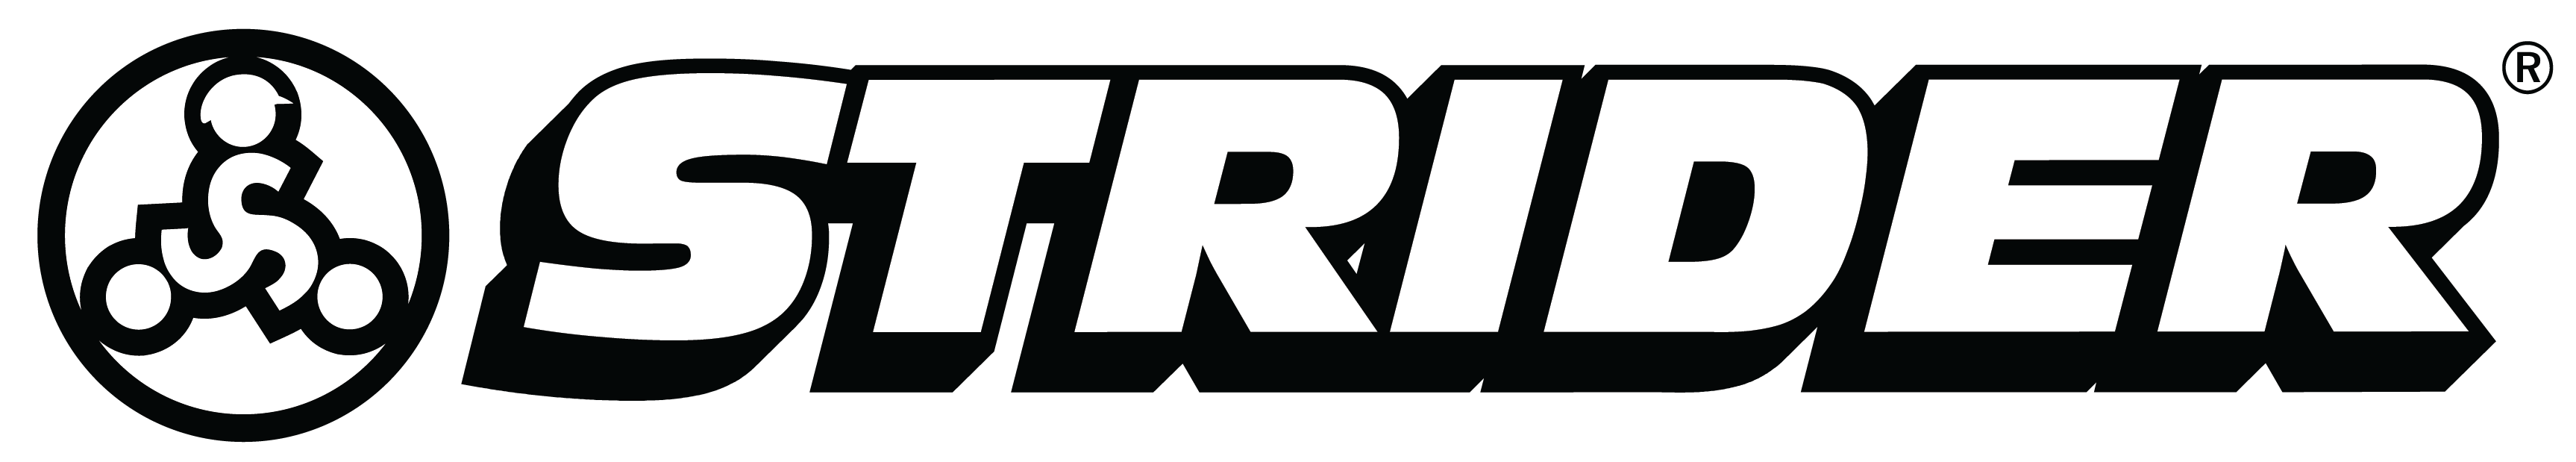 Strider Sports International logo